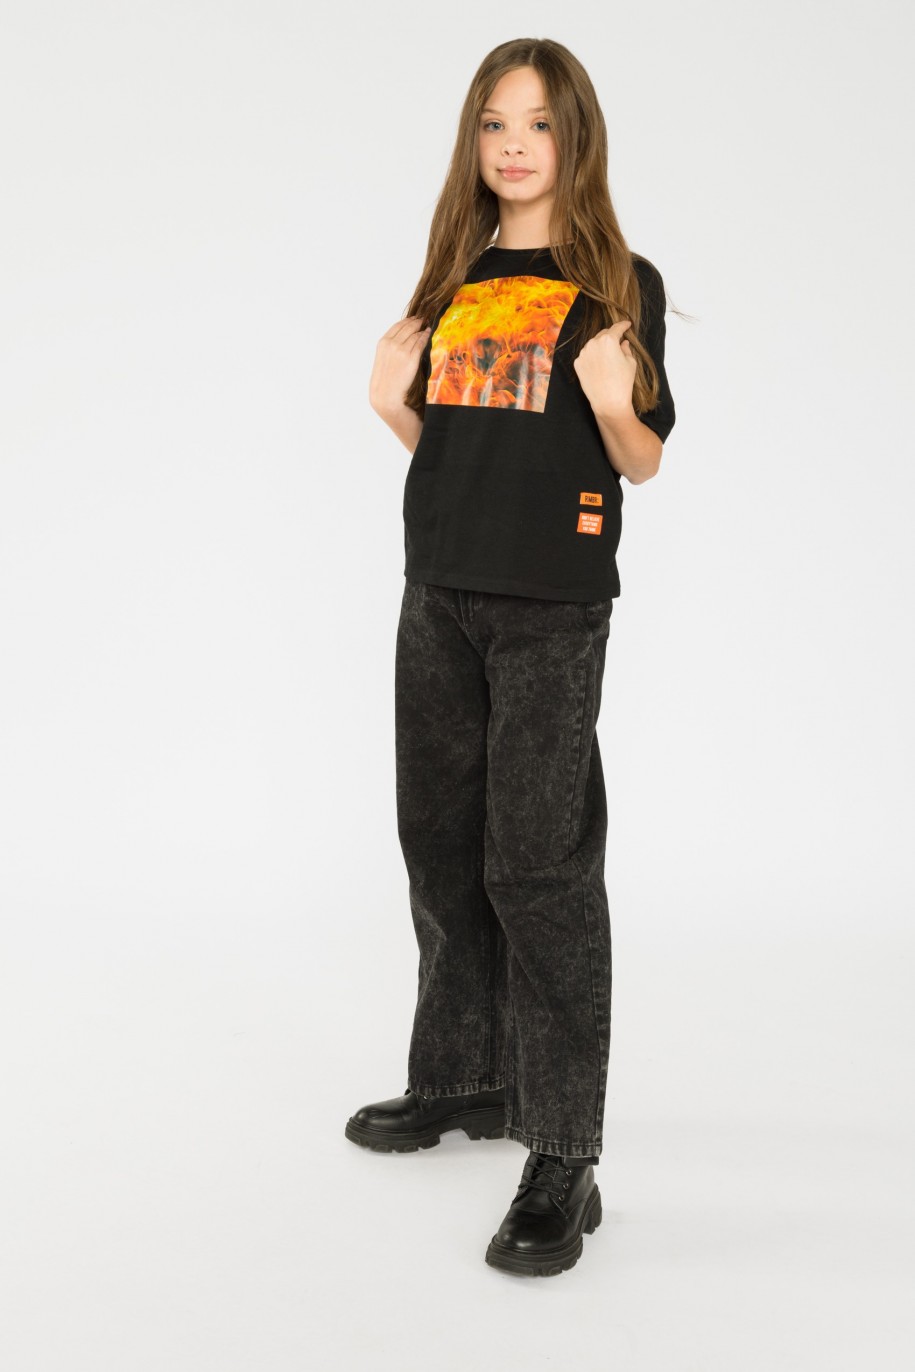 Czarny T-shirt dla dziewczyny z nadrukiem i aplikacją na rękawie FIRE - 32357